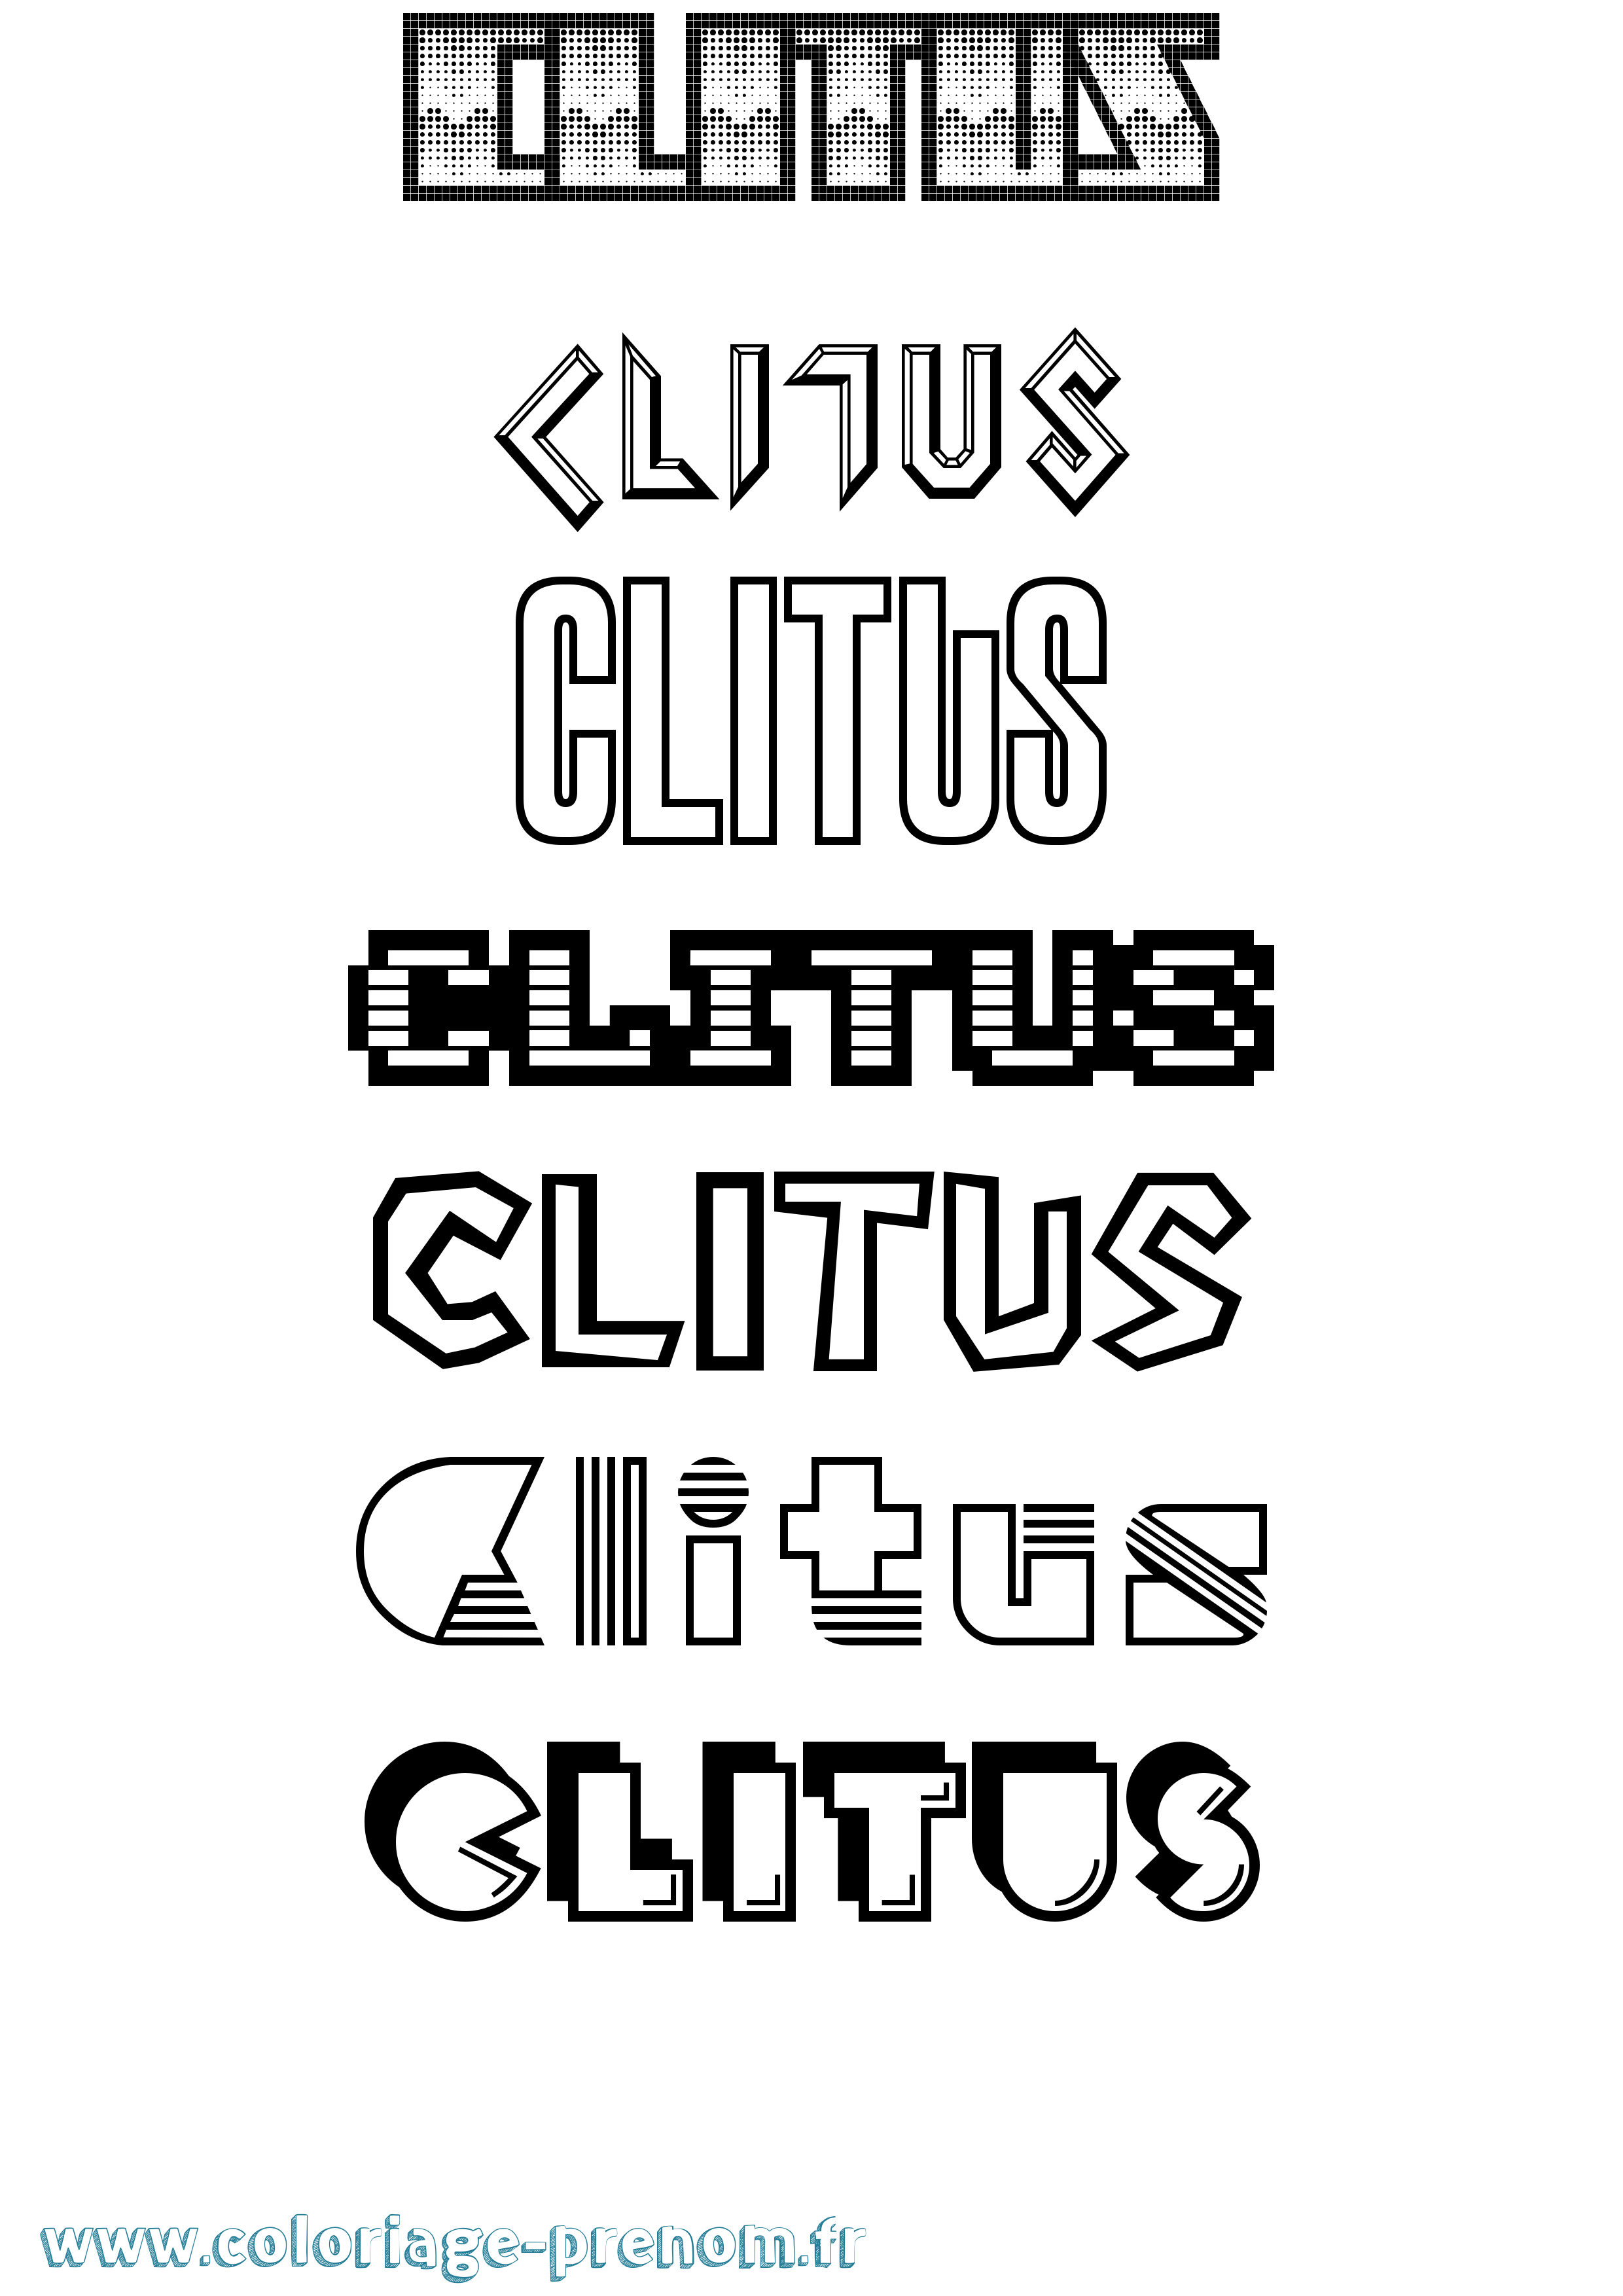 Coloriage prénom Clitus Jeux Vidéos